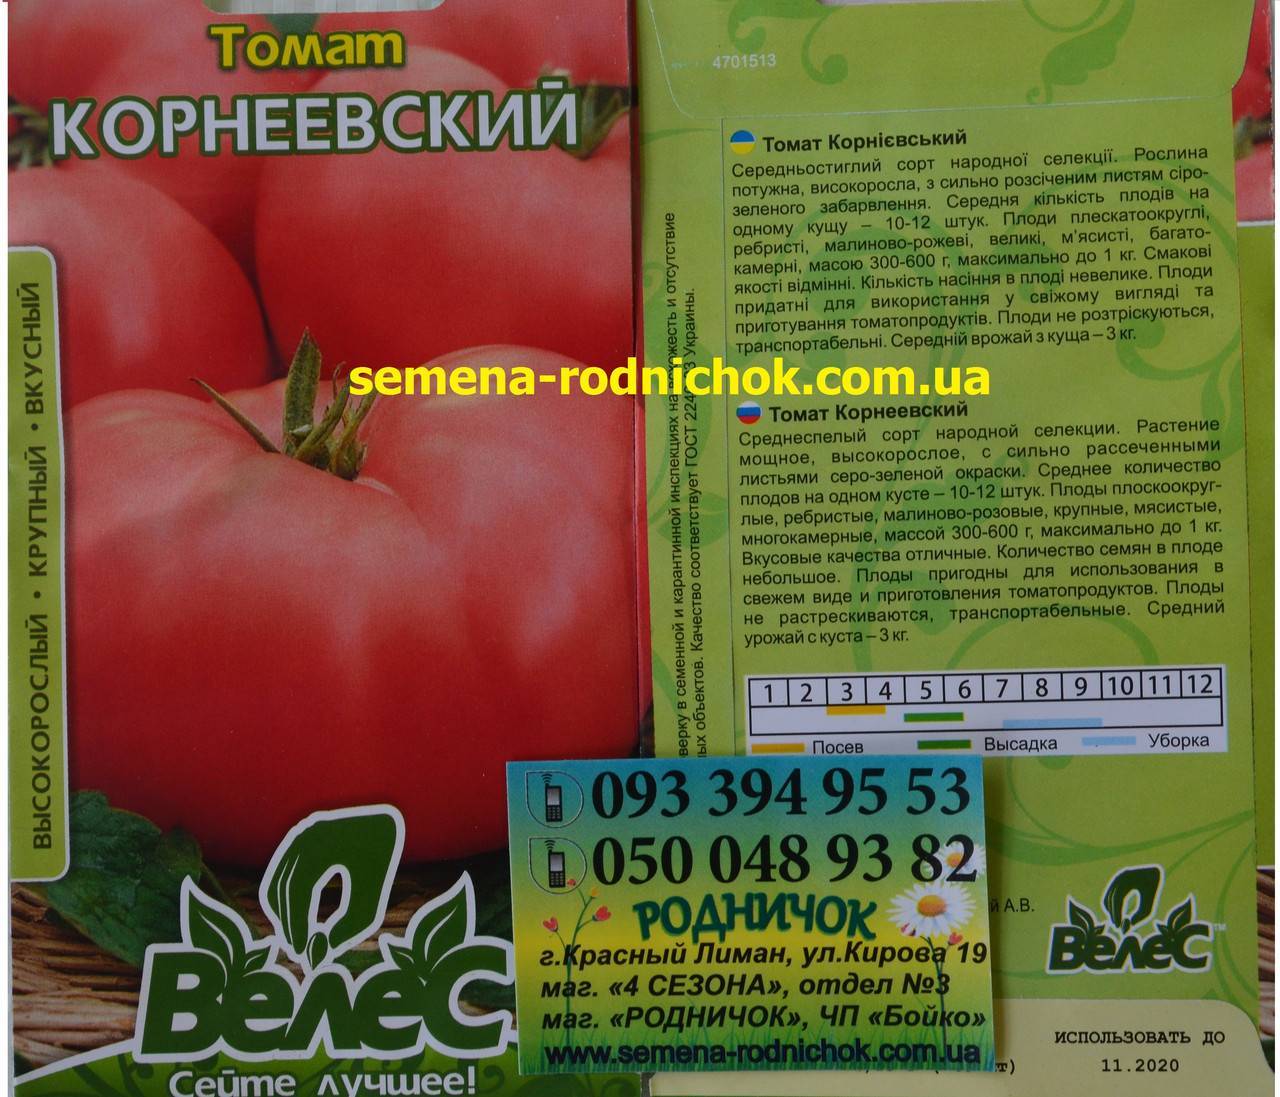 Томат "корнеевский розовый": описание сорта, рекомендации по выращиванию вкусных помидоров русский фермер